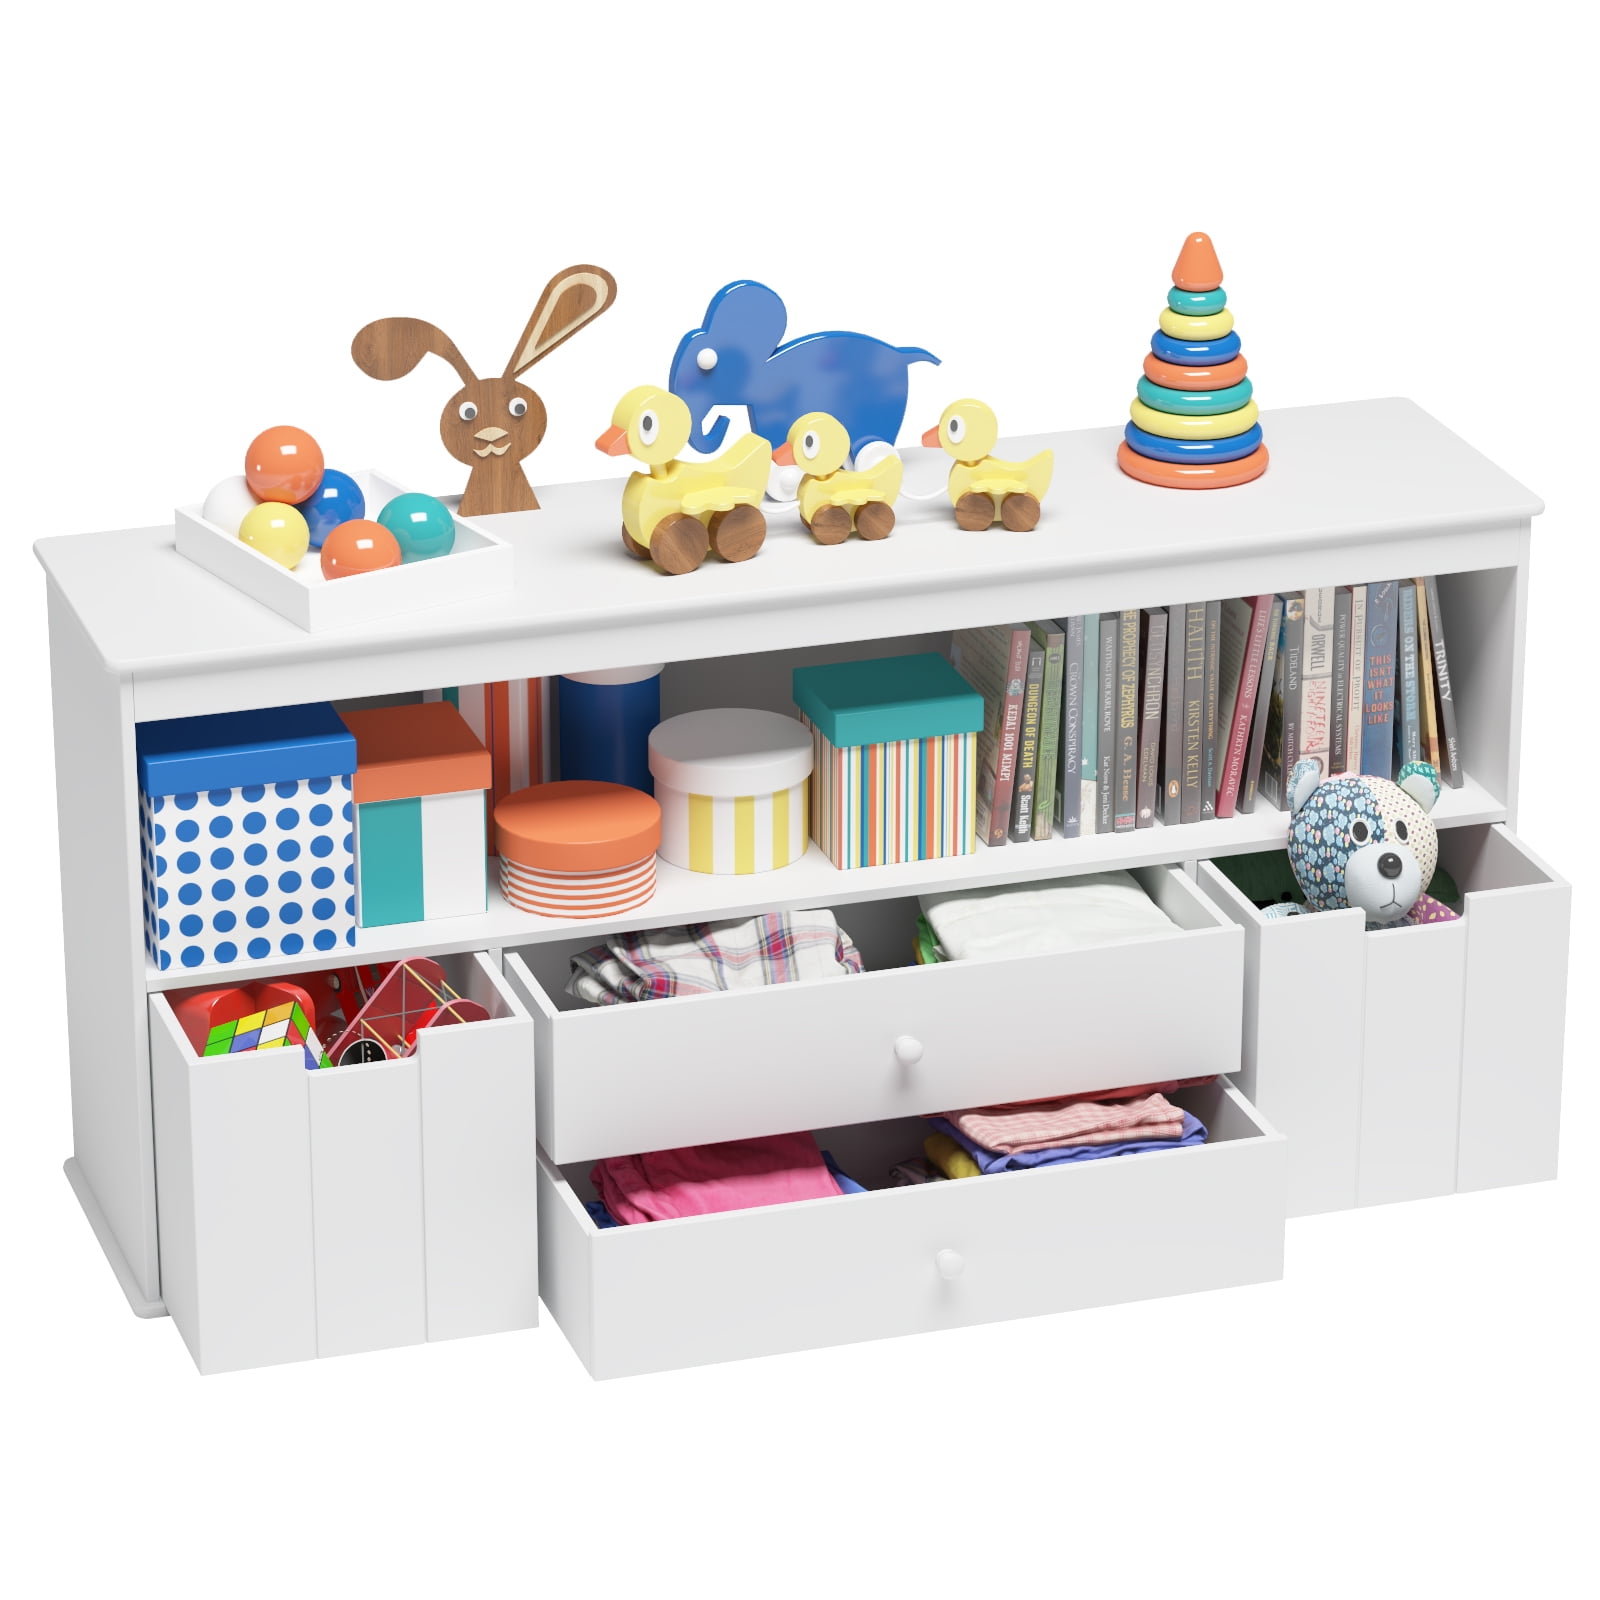 Toy Bin Toy Box Storage Chest Bin Kids Playroom Organizer Child Furniture 